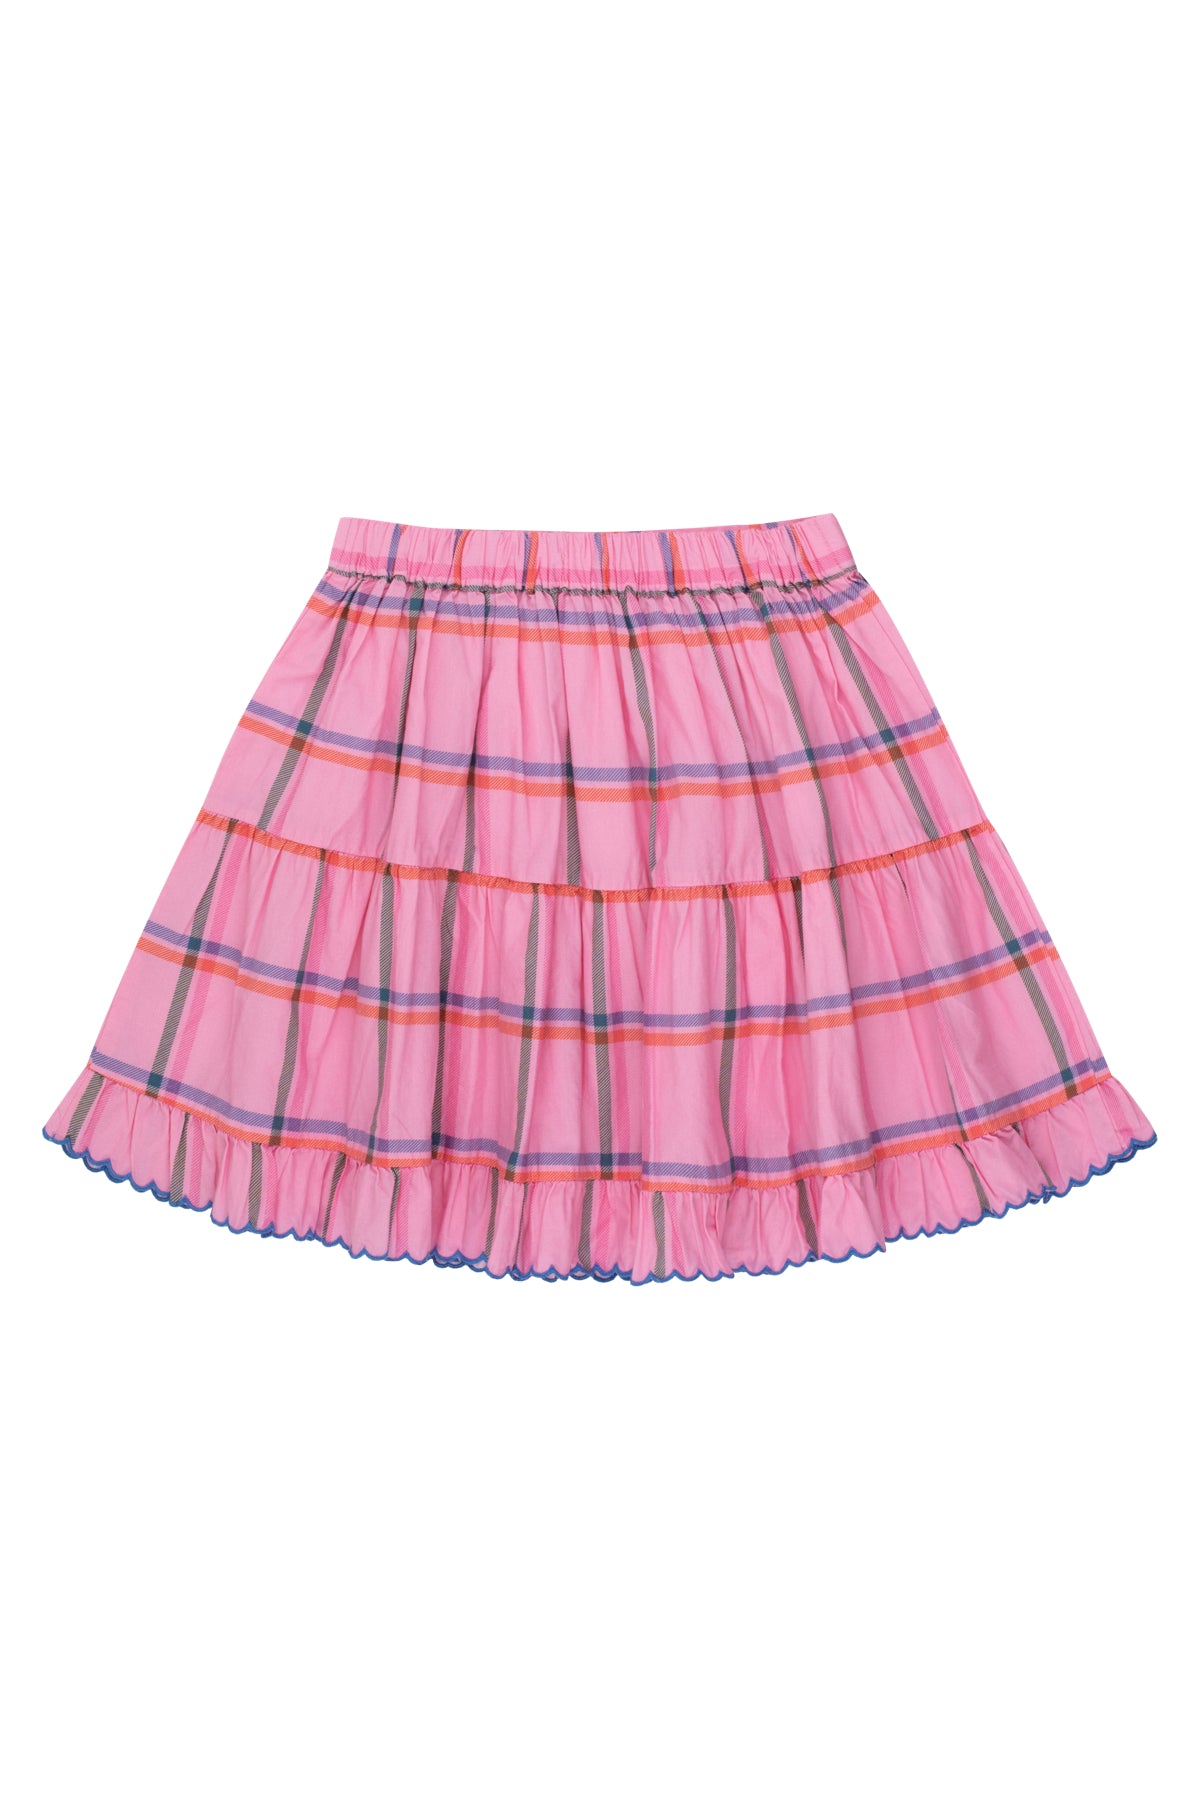 Check Skirt || Pink